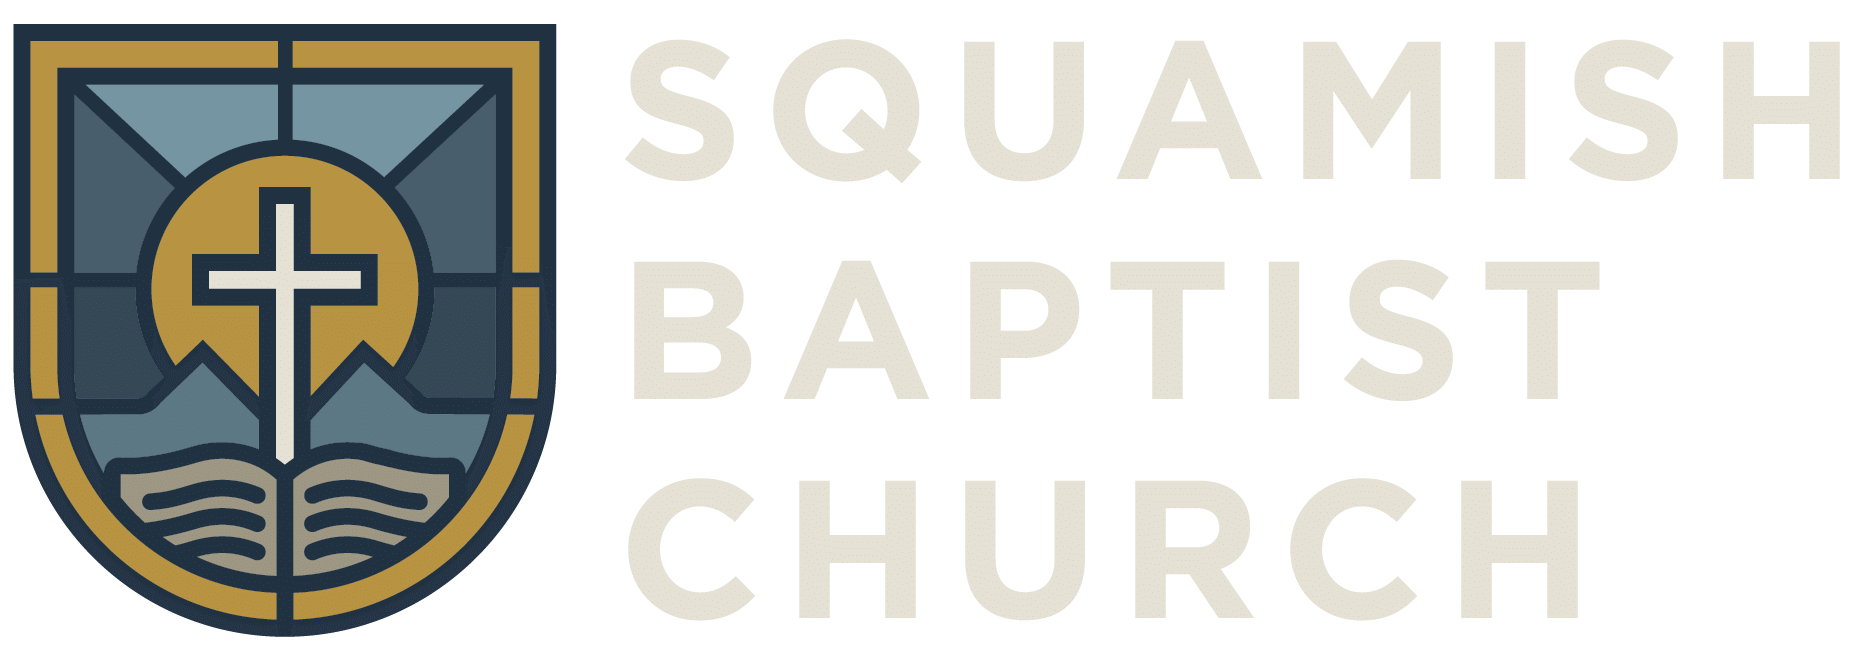 image of squamishbaptist.org